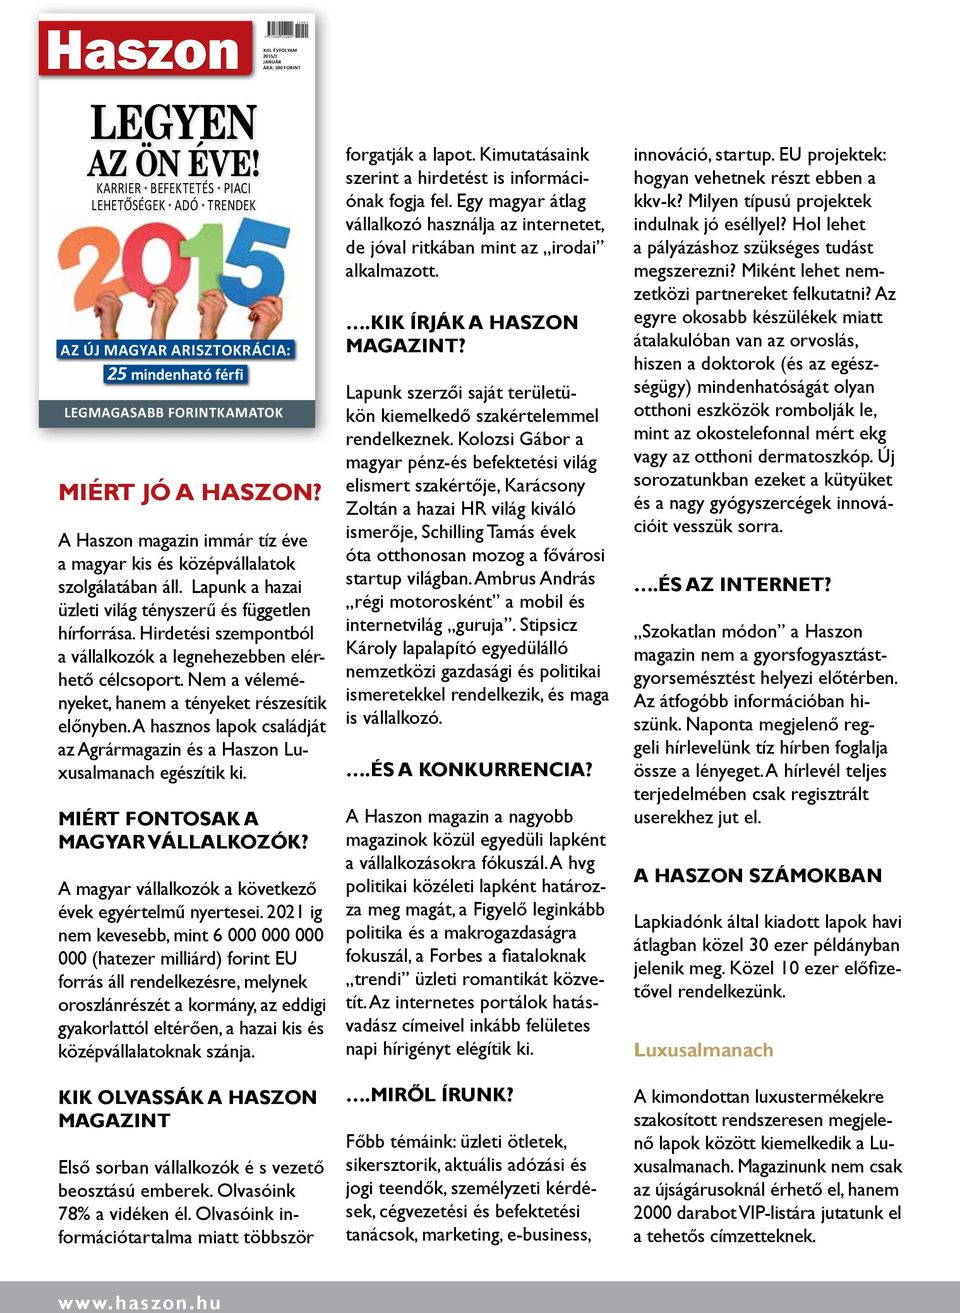 A magazin immár tíz éve a magyar kis és középvállalatok szolgálatában áll. Lapunk a hazai üzleti világ tényszerű és független hírforrása.